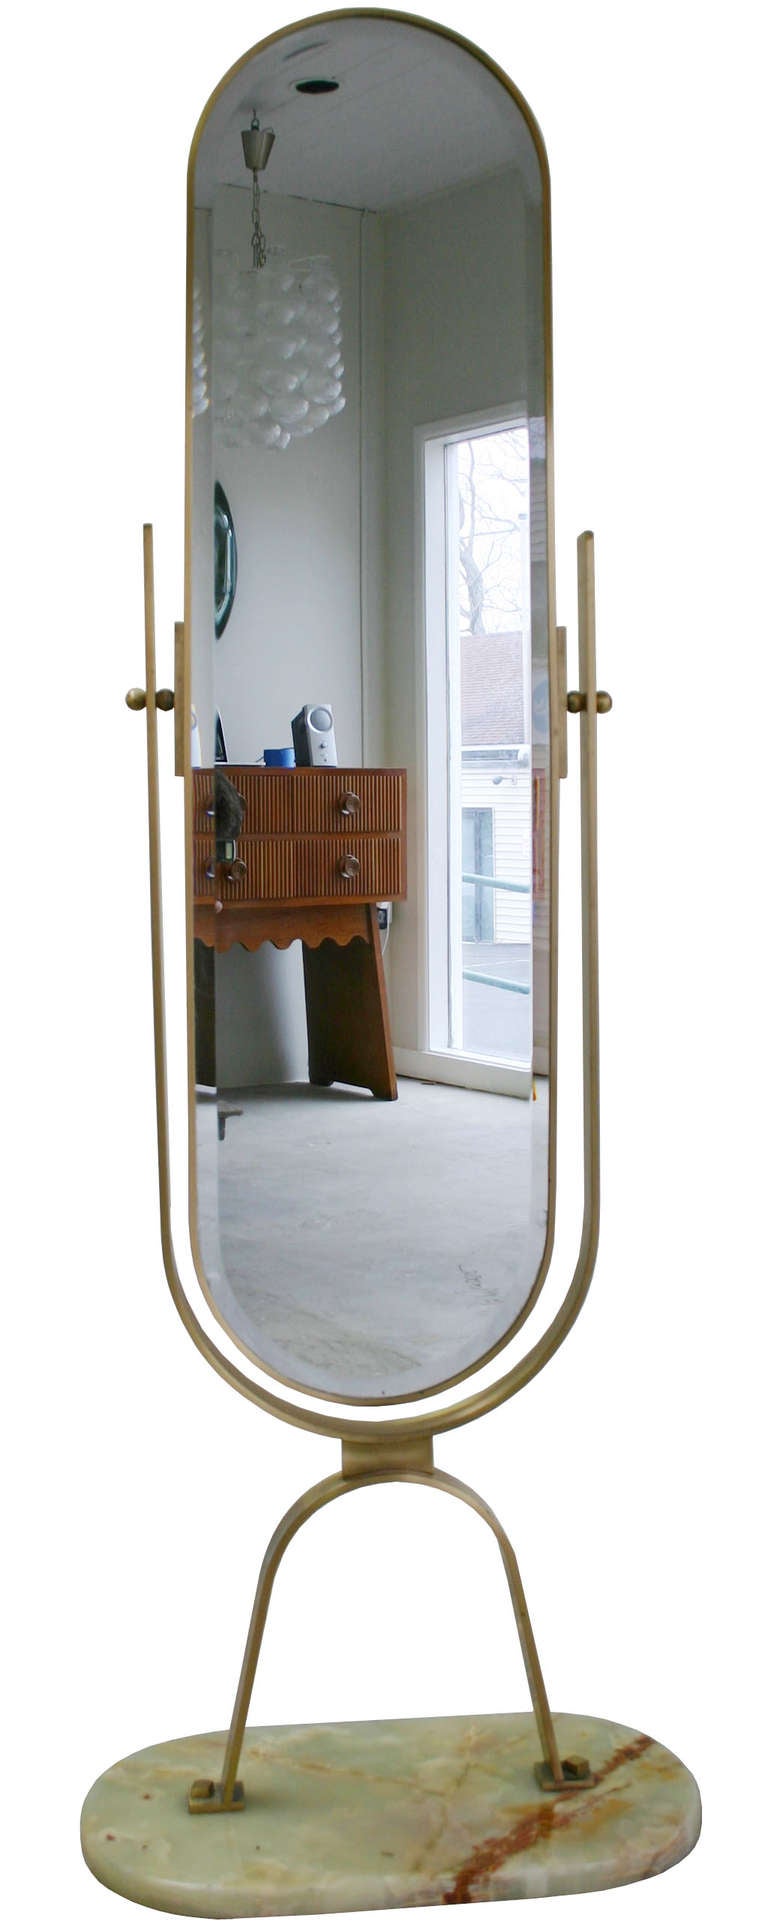 Charming brass frame rotating bevel-edge mirror on alibaster base.